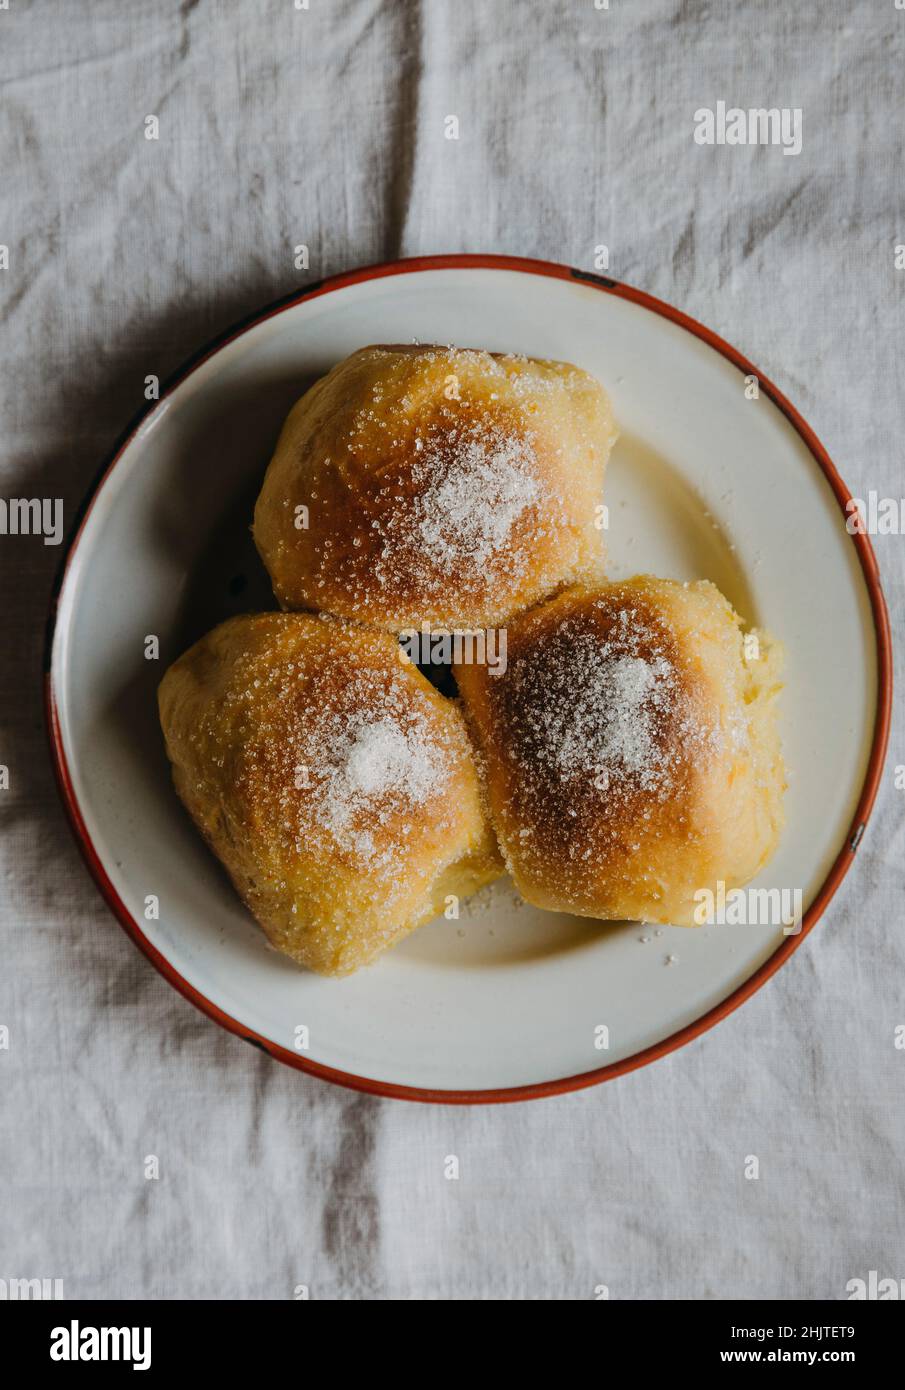 Une assiette de petits pains suédois au safran Banque D'Images